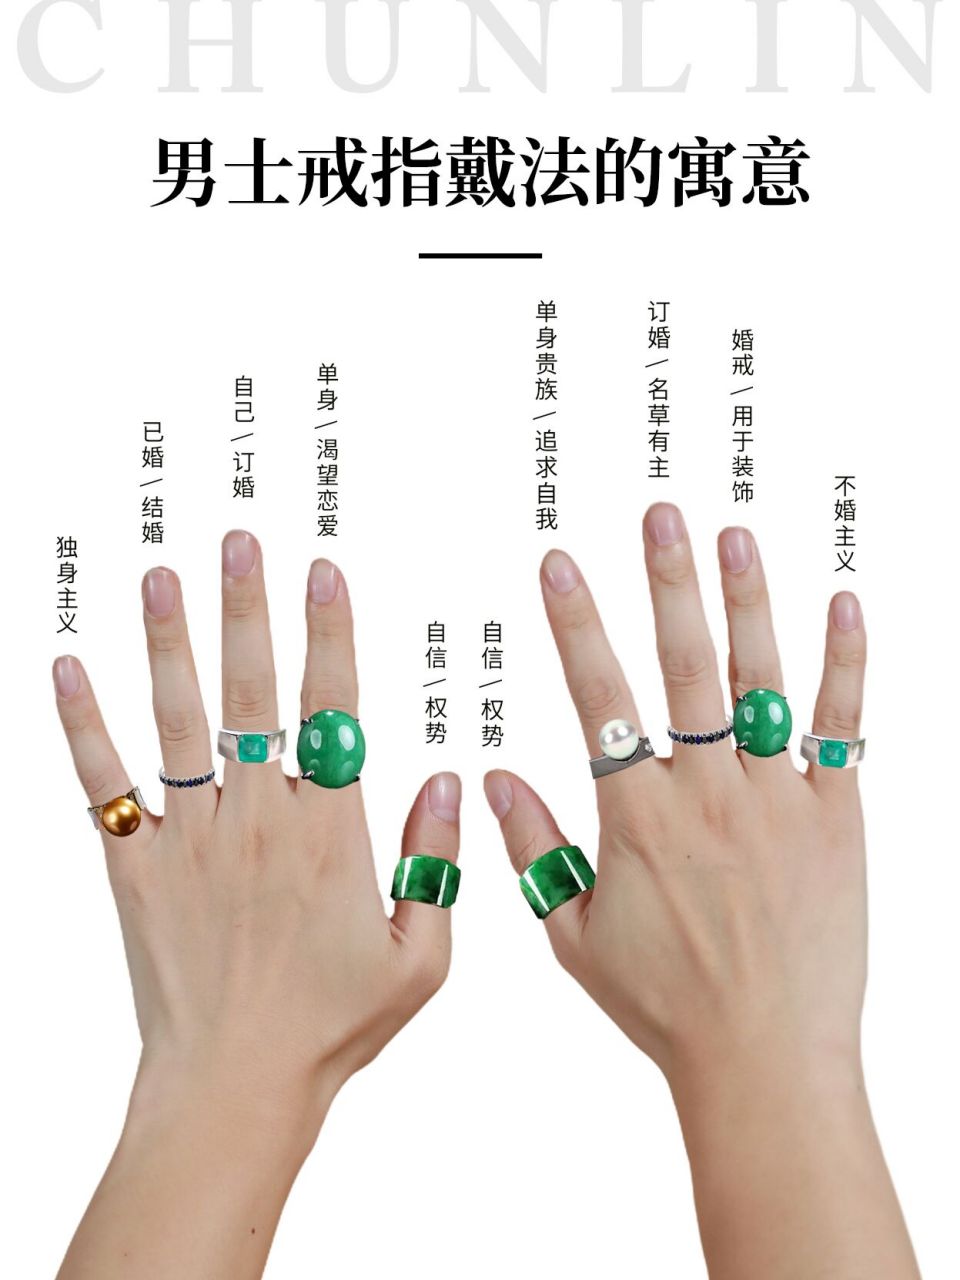 十个手指戴戒指的意义——男士篇 上期说到女生戴戒指的寓意,这次讲讲